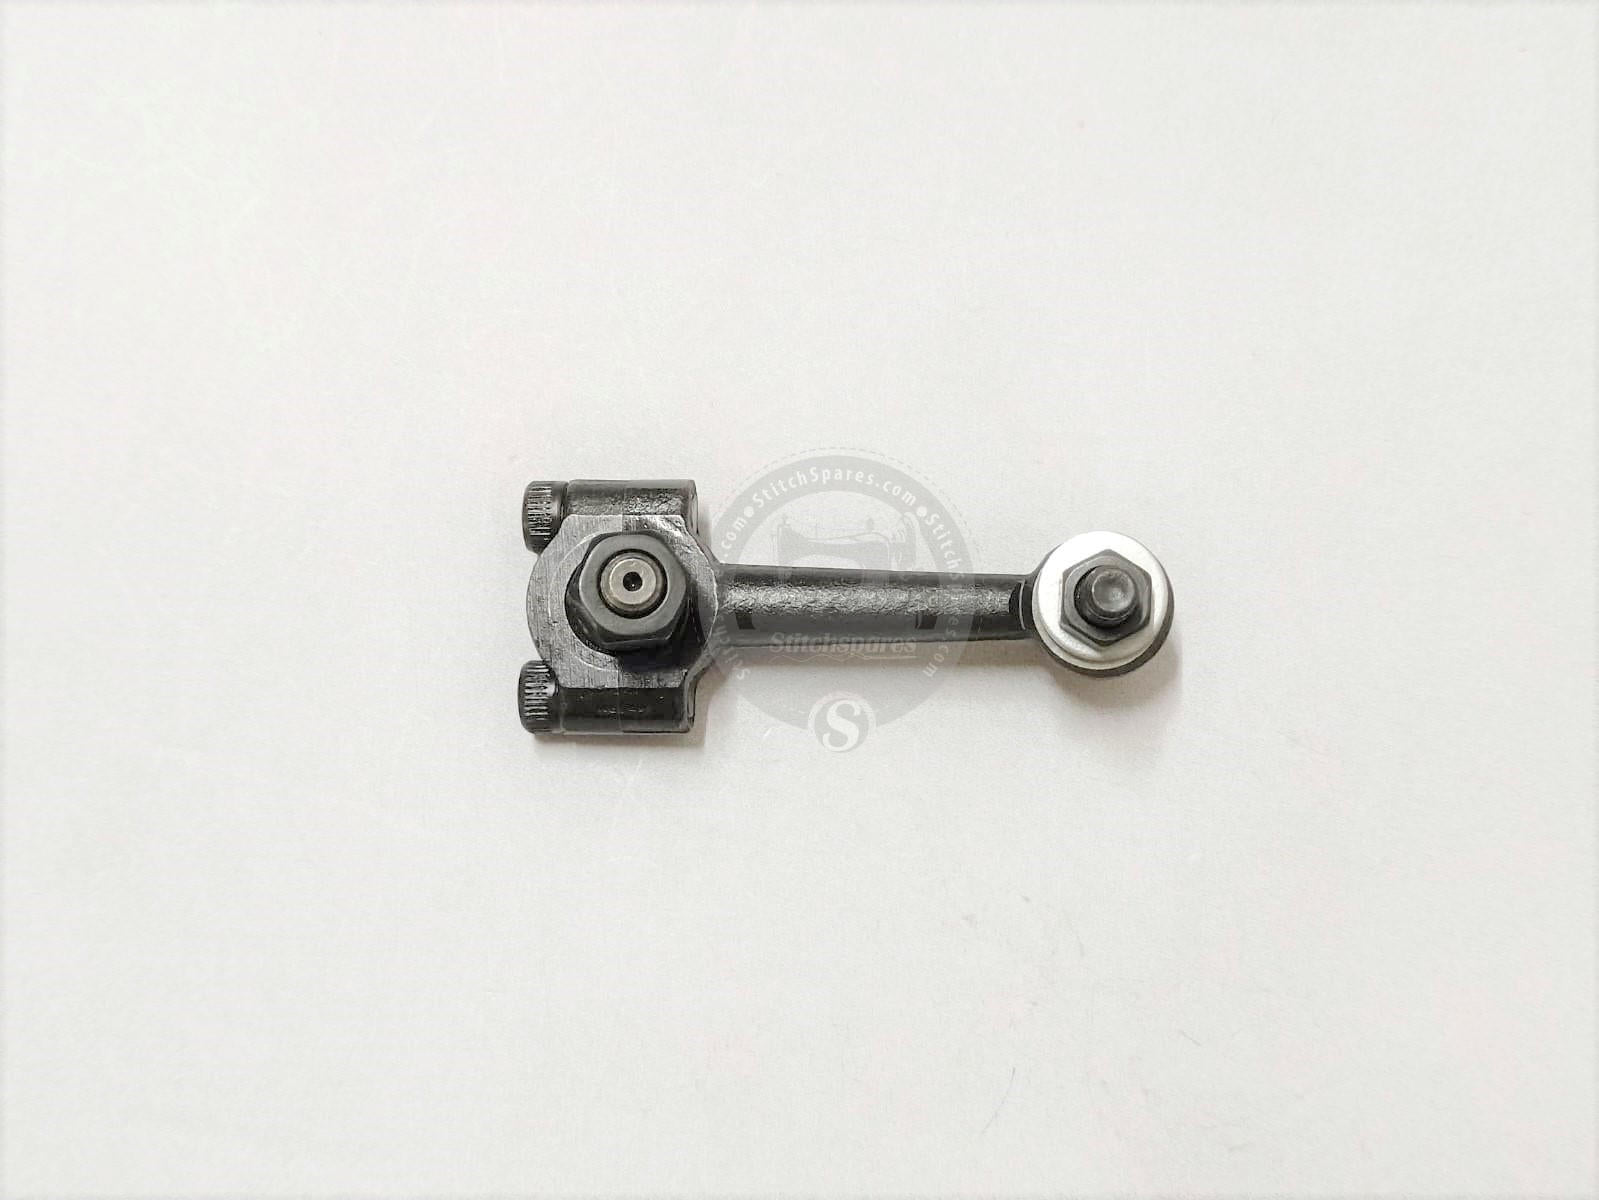 FX-4404, FX-4412 Varilla de conexión del extractor (tipo nuevo largo) KANSAI SPECIAL Cama cilíndrica Elástico y cinta Fijación de múltiples agujas Pieza de repuesto para máquina de coser